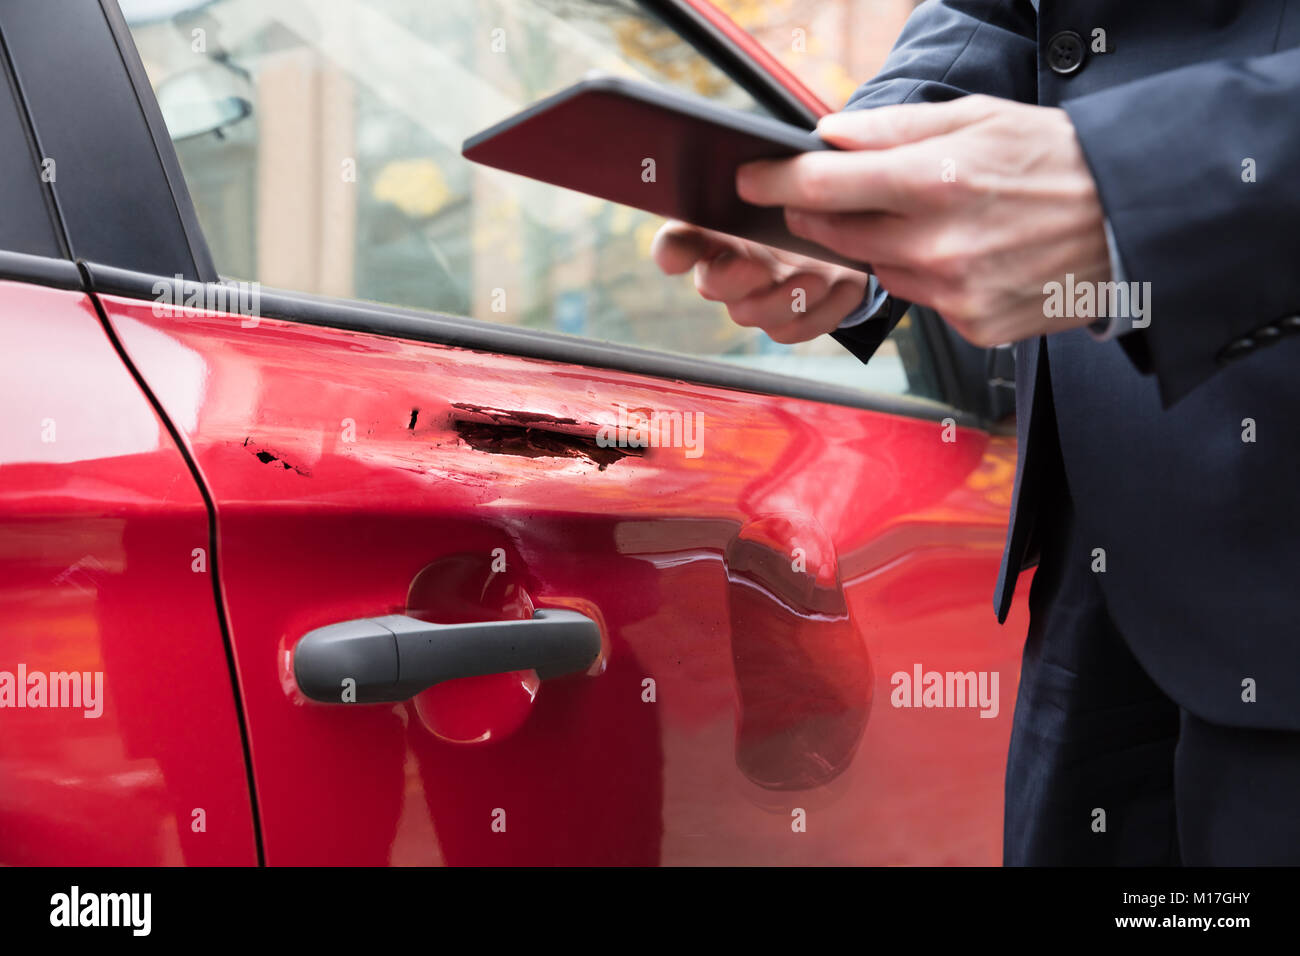 Voiture rouge près de Person's hand with Digital Tablet Banque D'Images